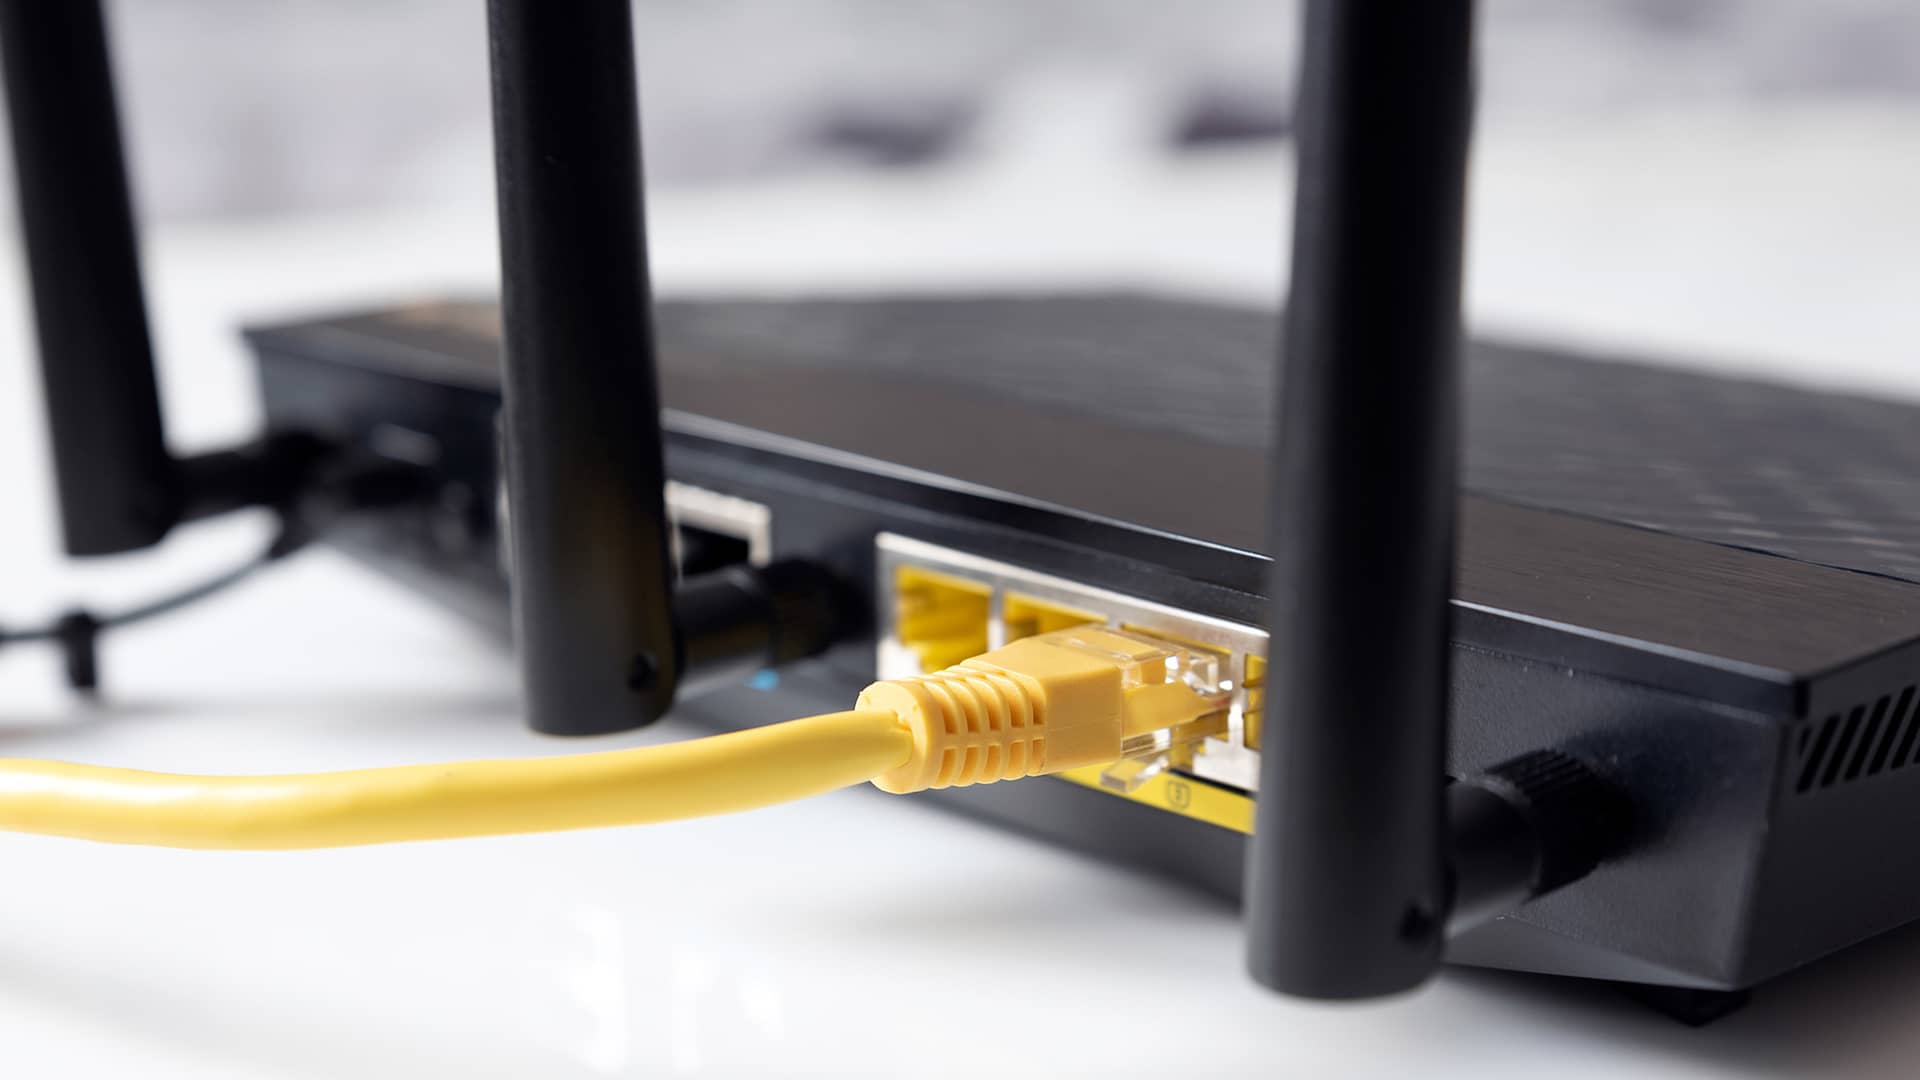 Abrir los puertos del router MásMóvil: Paso a paso